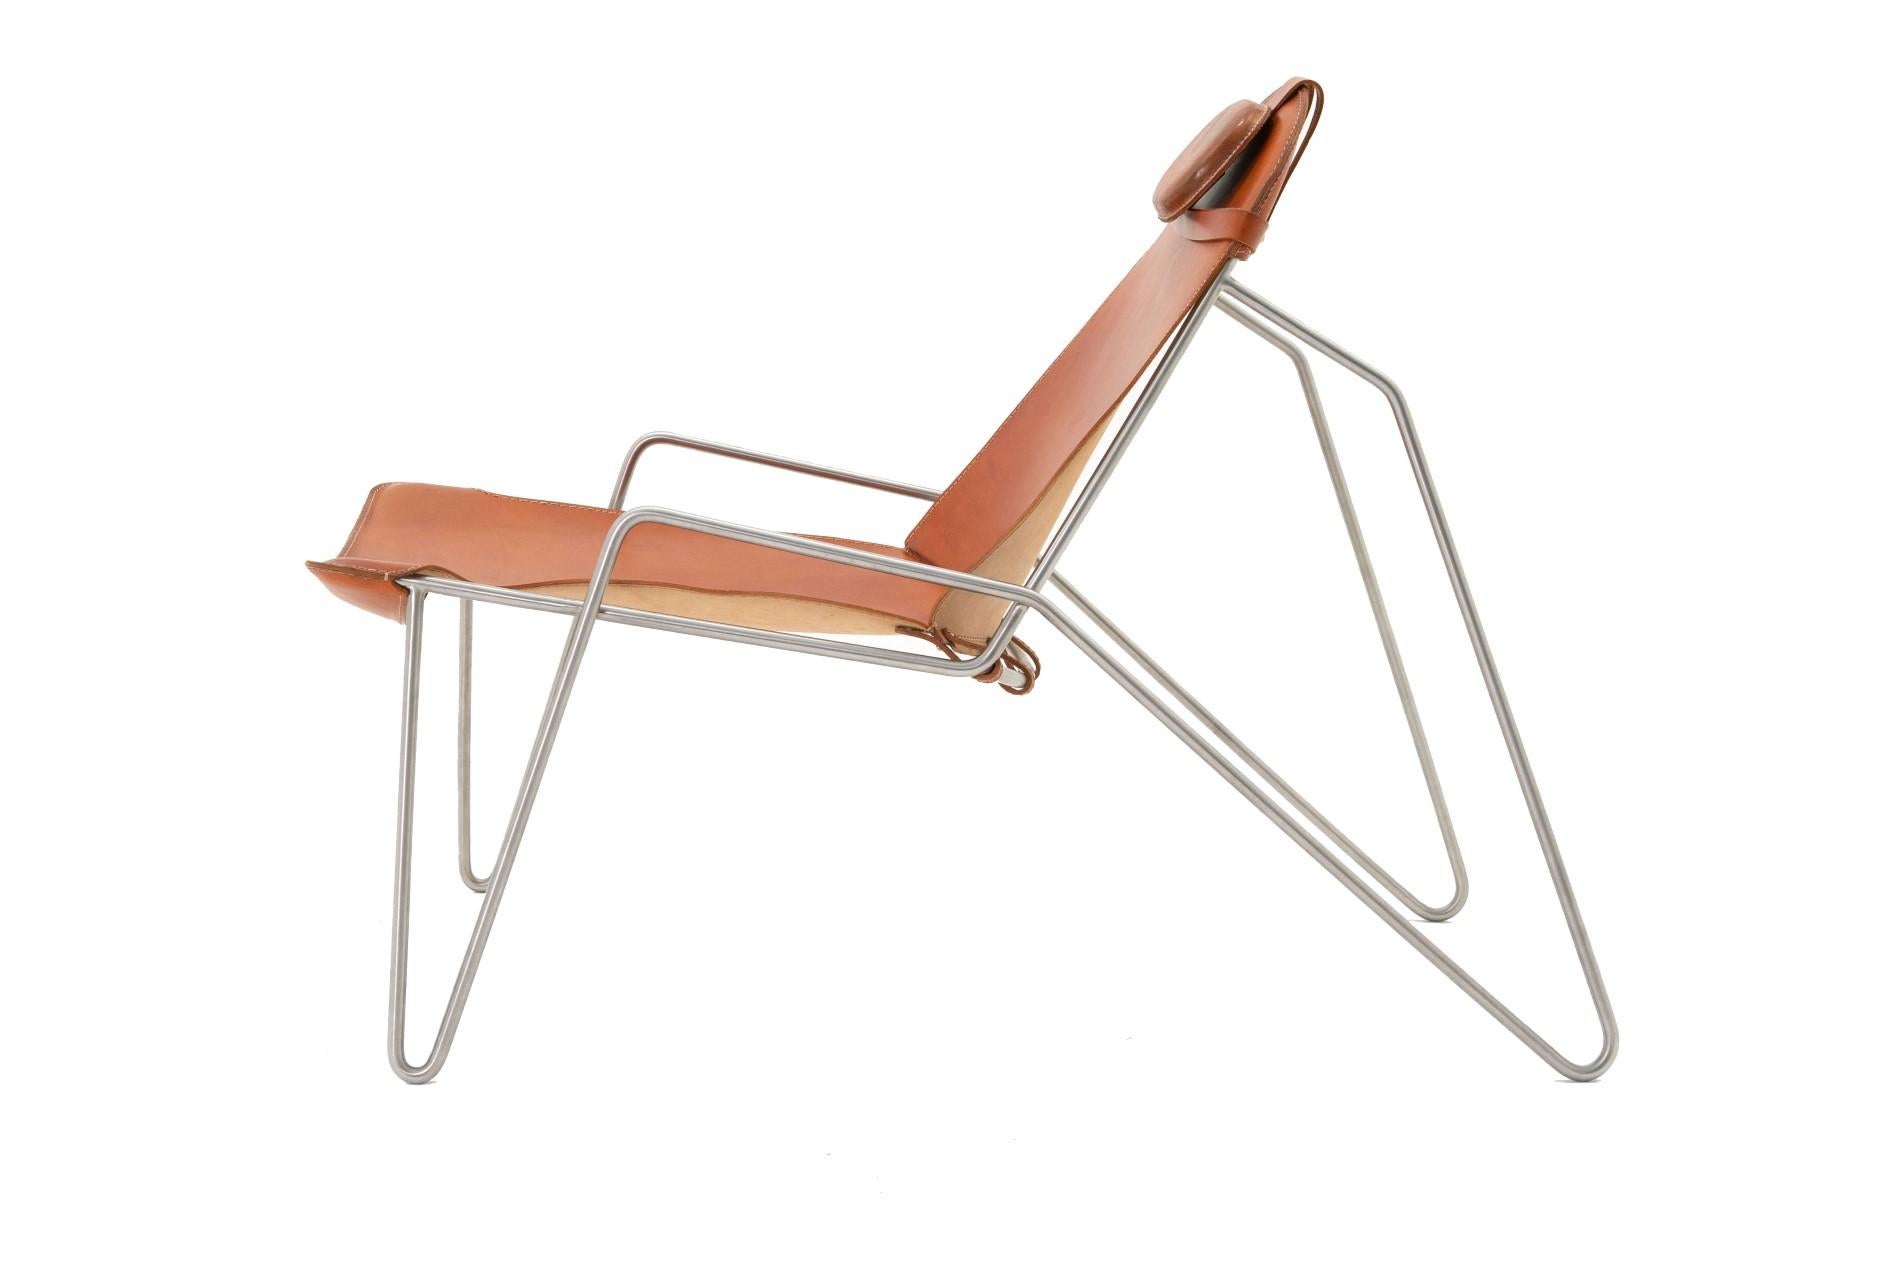 Der Sessel verfügt über eine handgefertigte Lederrückenlehne und einen Sitz mit verstellbaren Gurten auf einem massiven Edelstahlrahmen. Und ein höhenverstellbares Kopfkissen, das auf einem abnehmbaren Bikini-Rüssel ruht. Der Sessel nimmt die